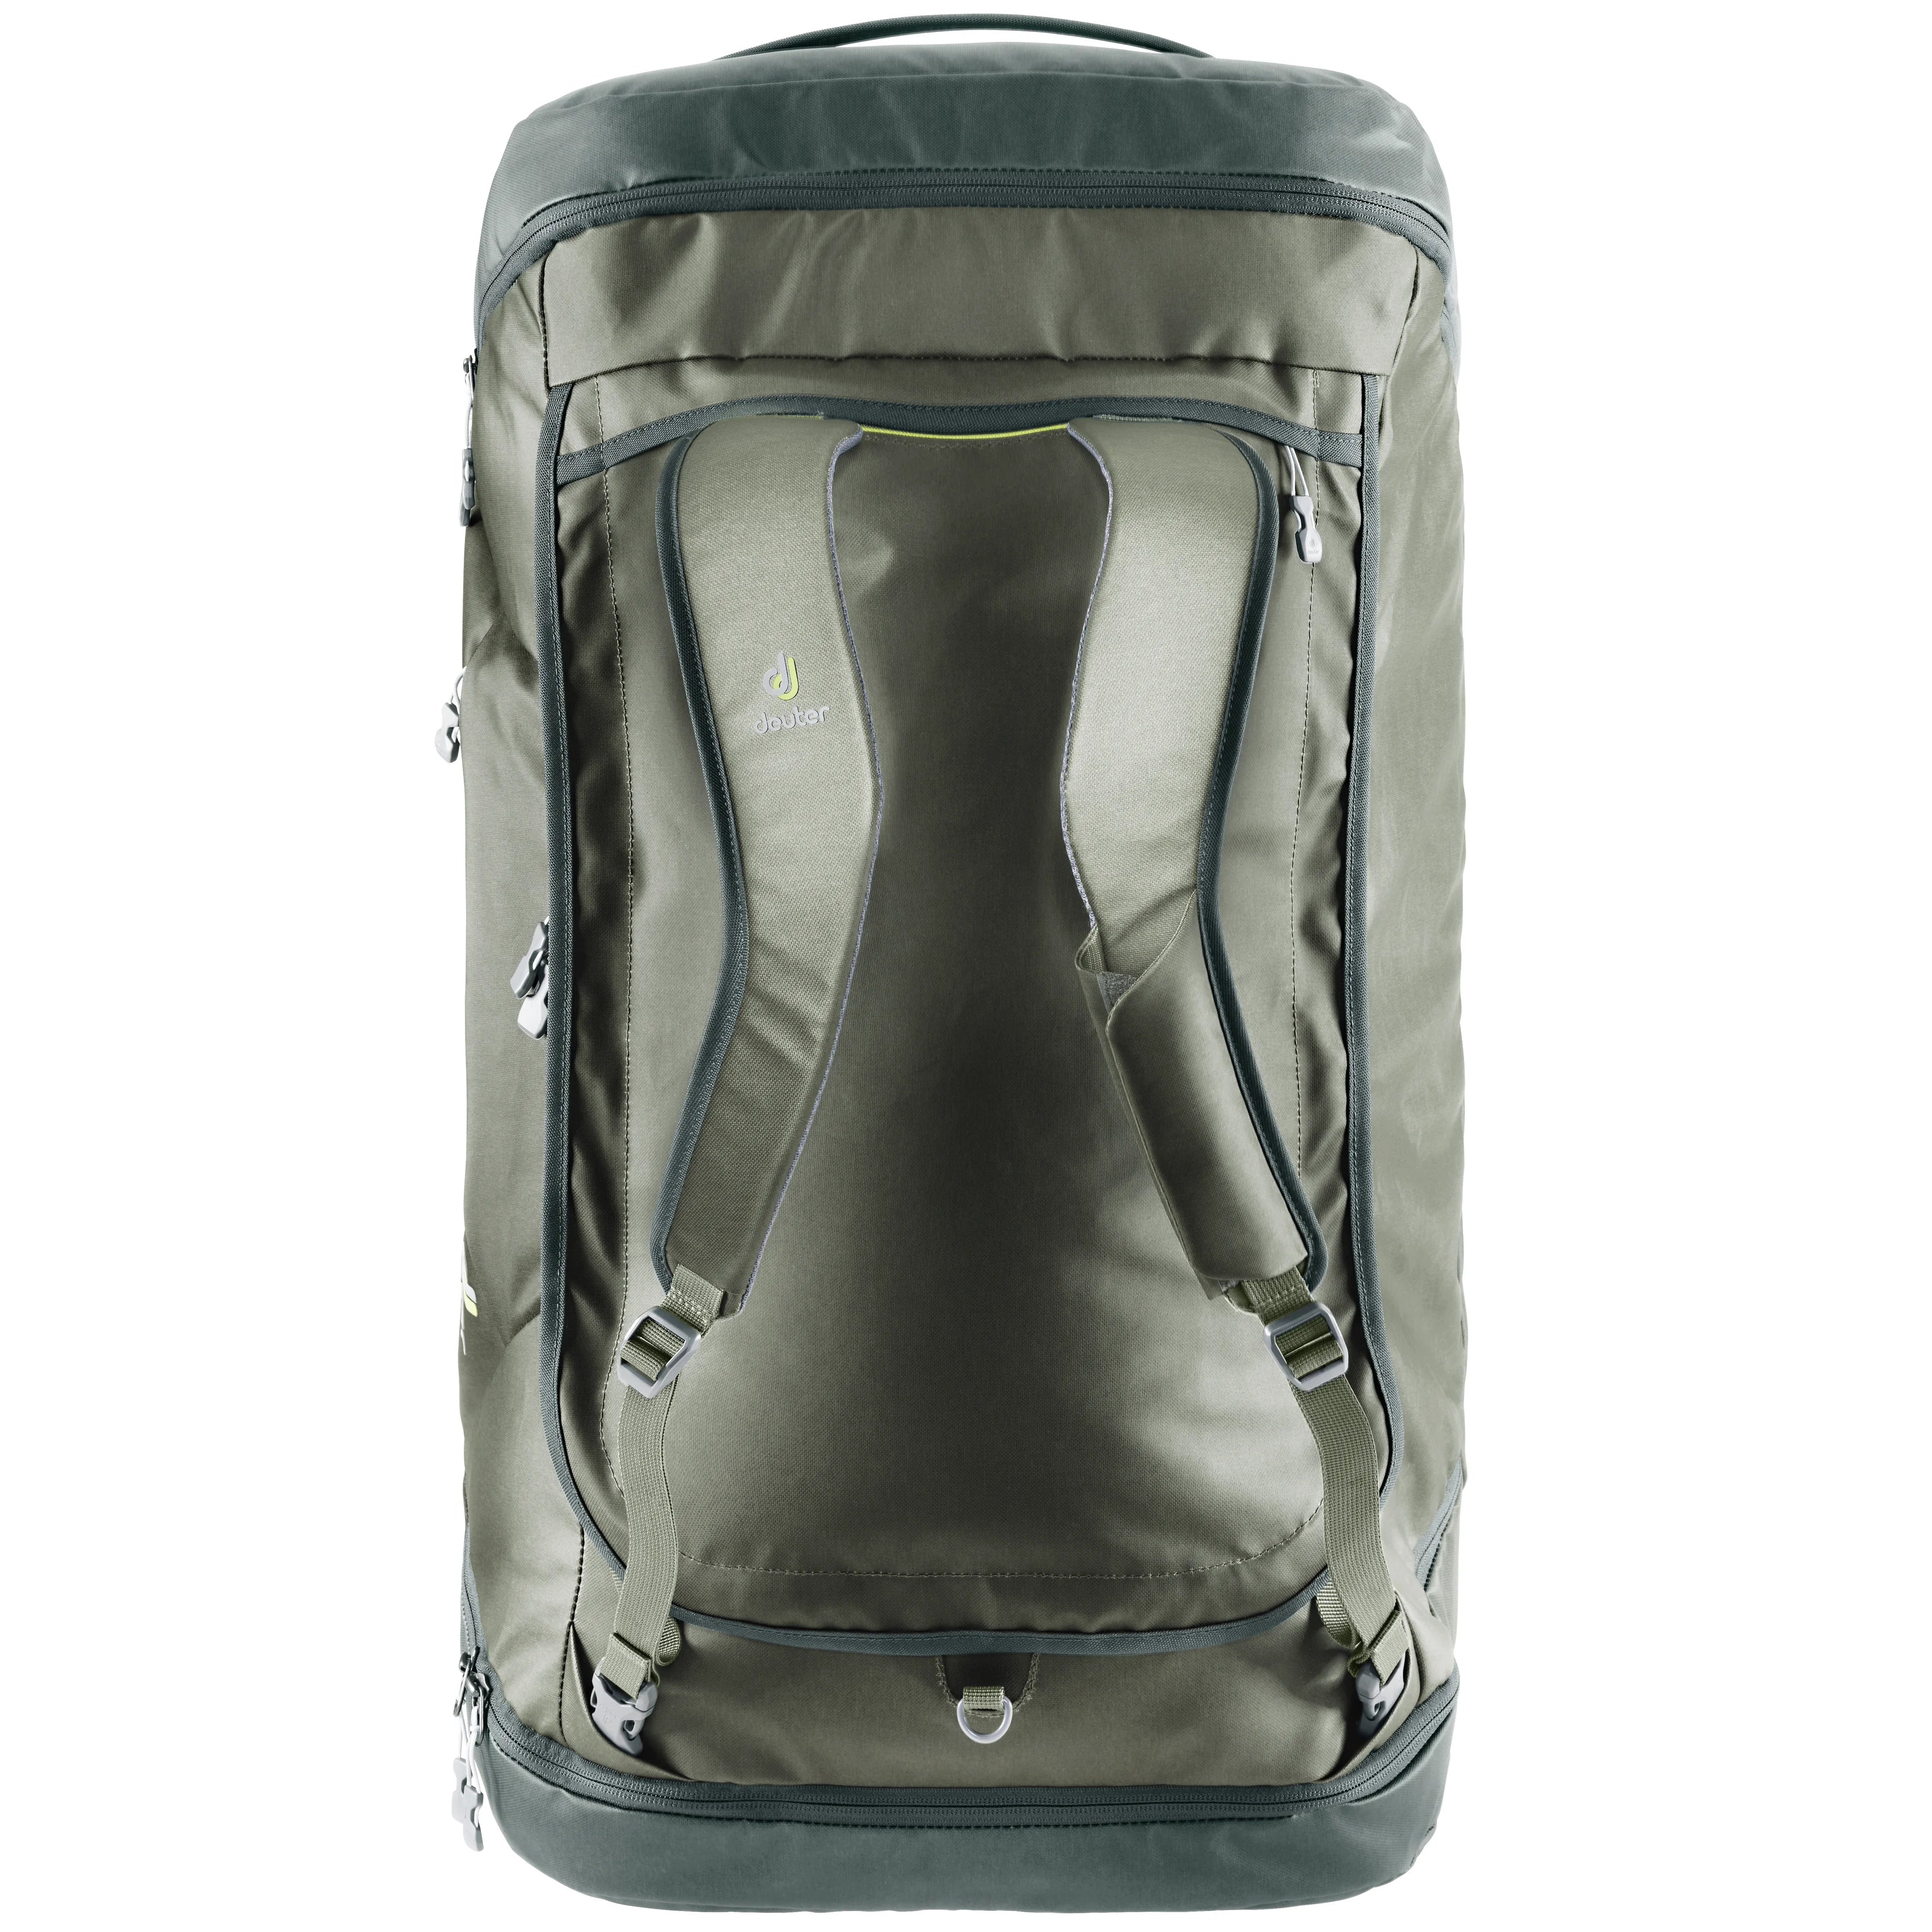 Deuter Travel Aviant Duffle Pro 40 sac de voyage 52 cm - jade-vert d'eau